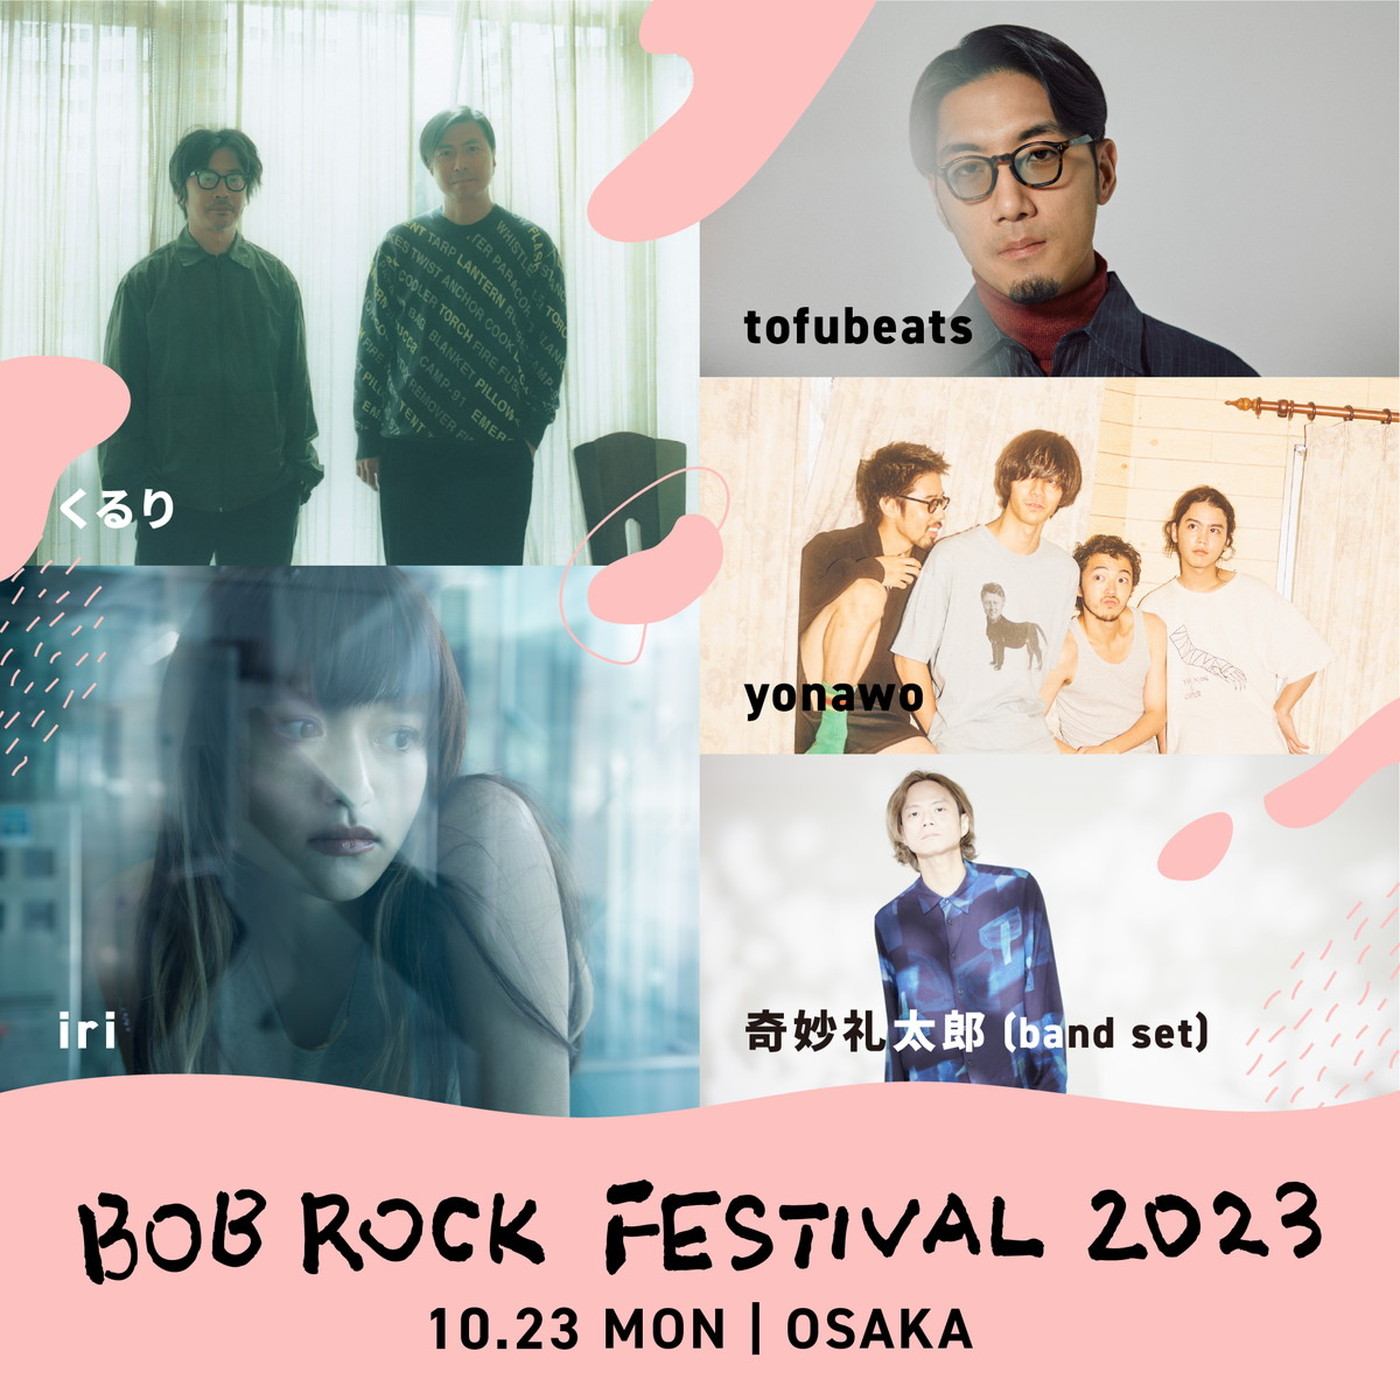 くるり、iri、tofubeats、yonawo、奇妙礼太郎が『BOB ROCK FESTIVAL』に出演決定